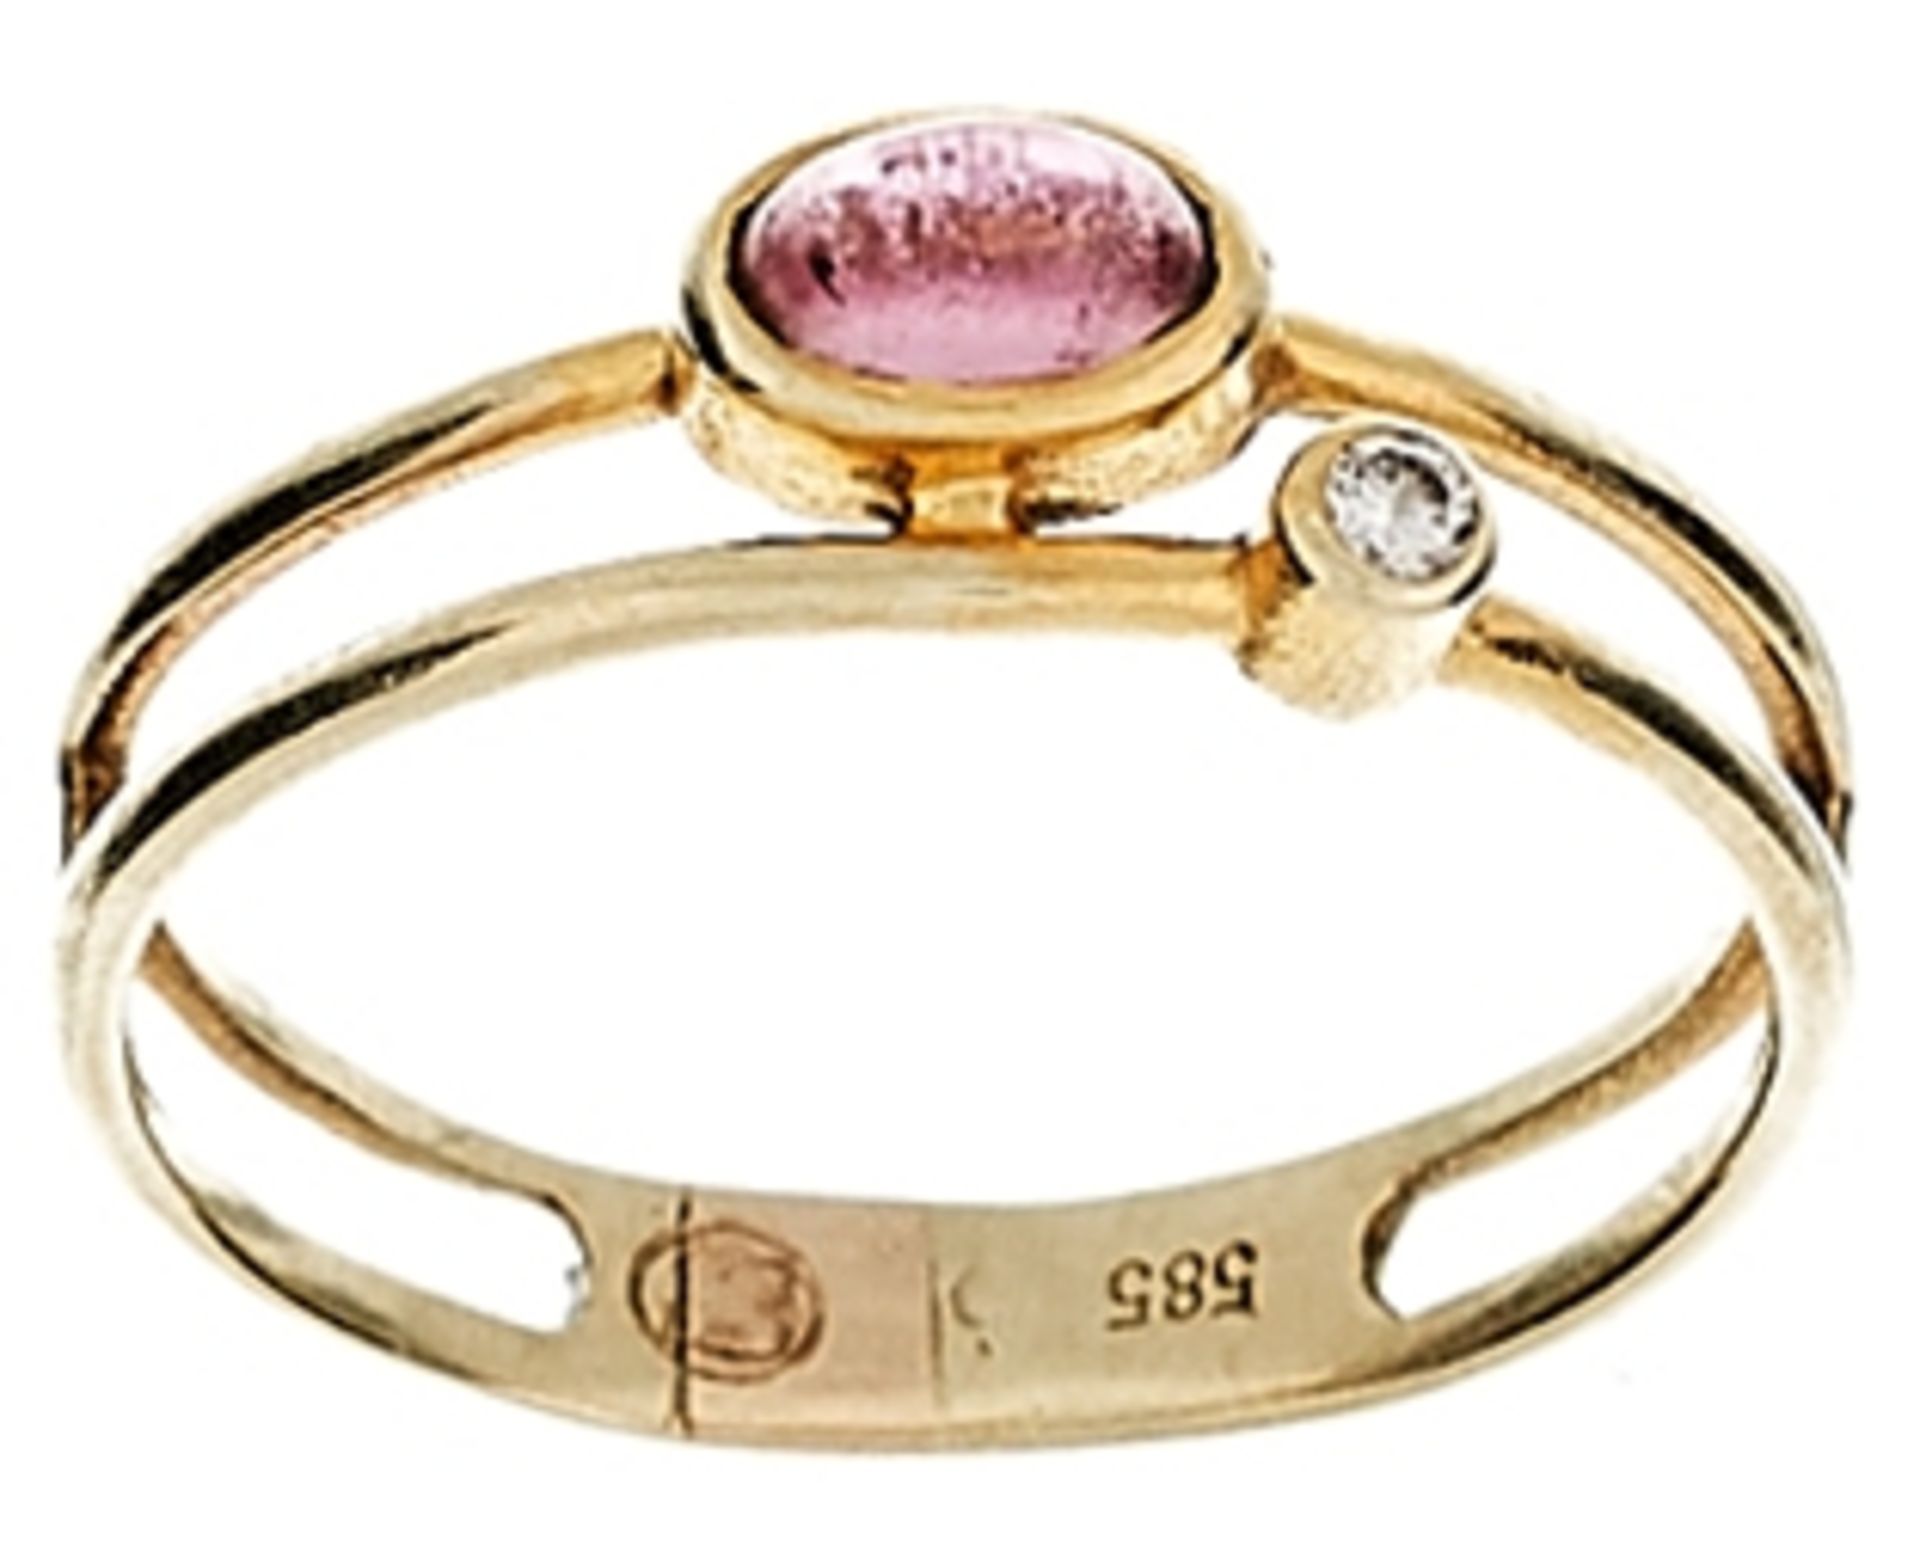 Ringe mit Steinbesatz Zierlicher Damenfingerring mit Besatz aus einem rosa Farbsteincabochon und